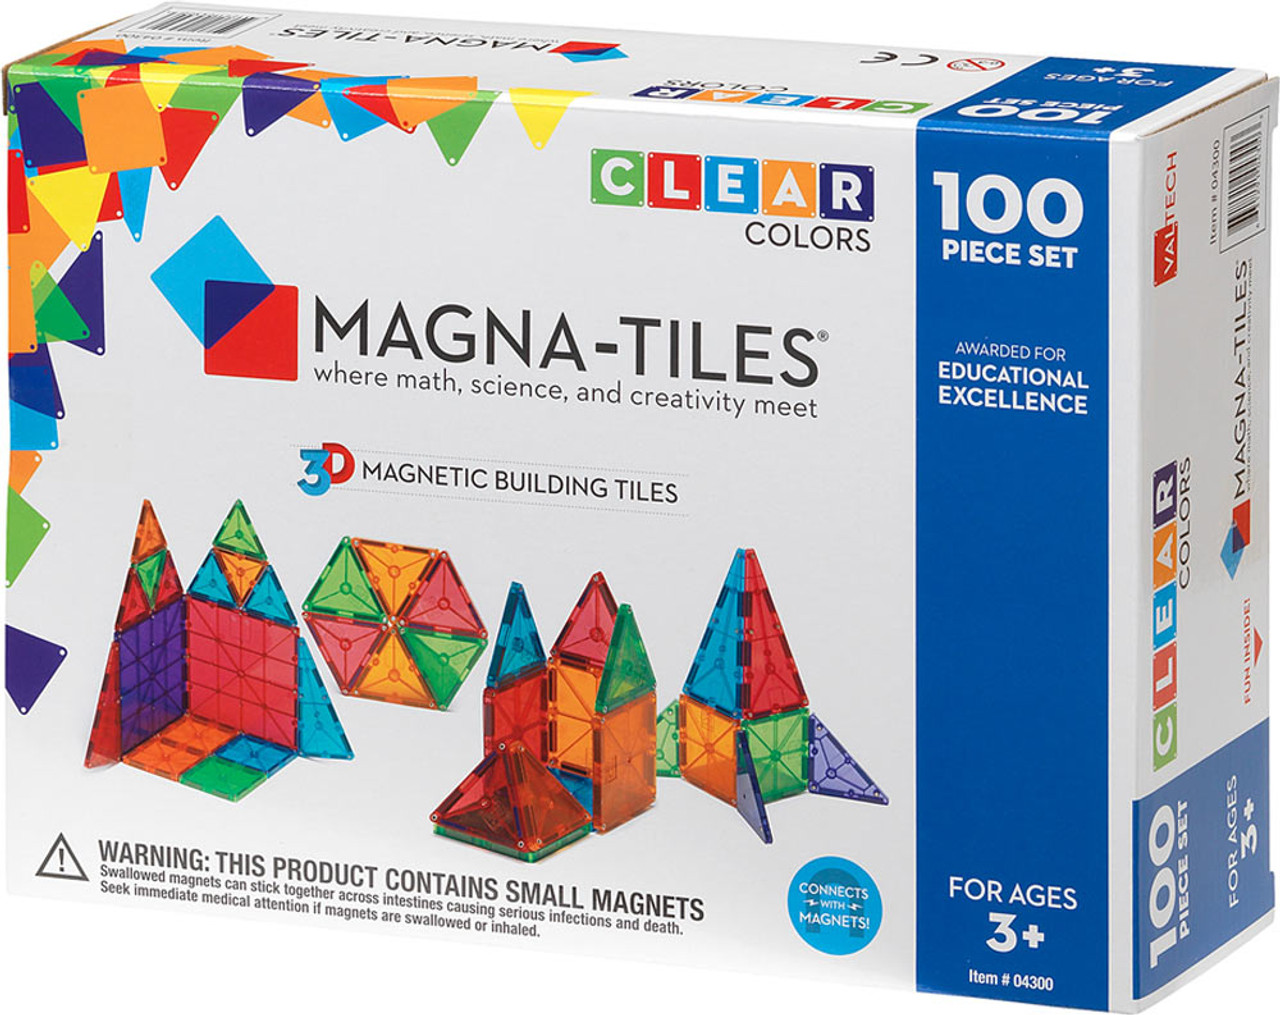 Magna-Tiles<U+0099> Clear Colors 100 Piece Set 1